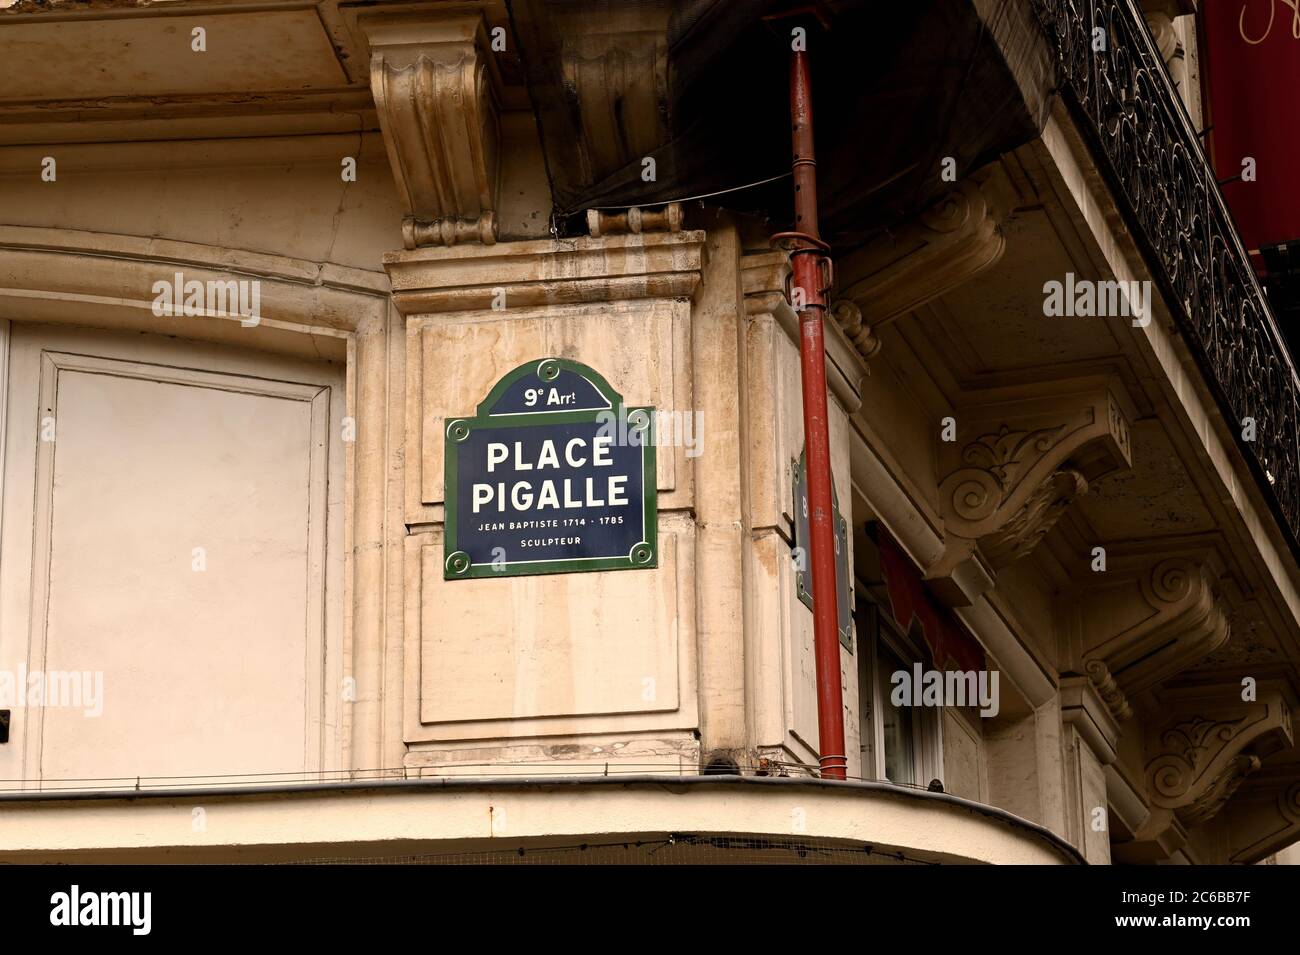 Lugar famoso en París, conocido por la vida nocturna caliente Foto de stock